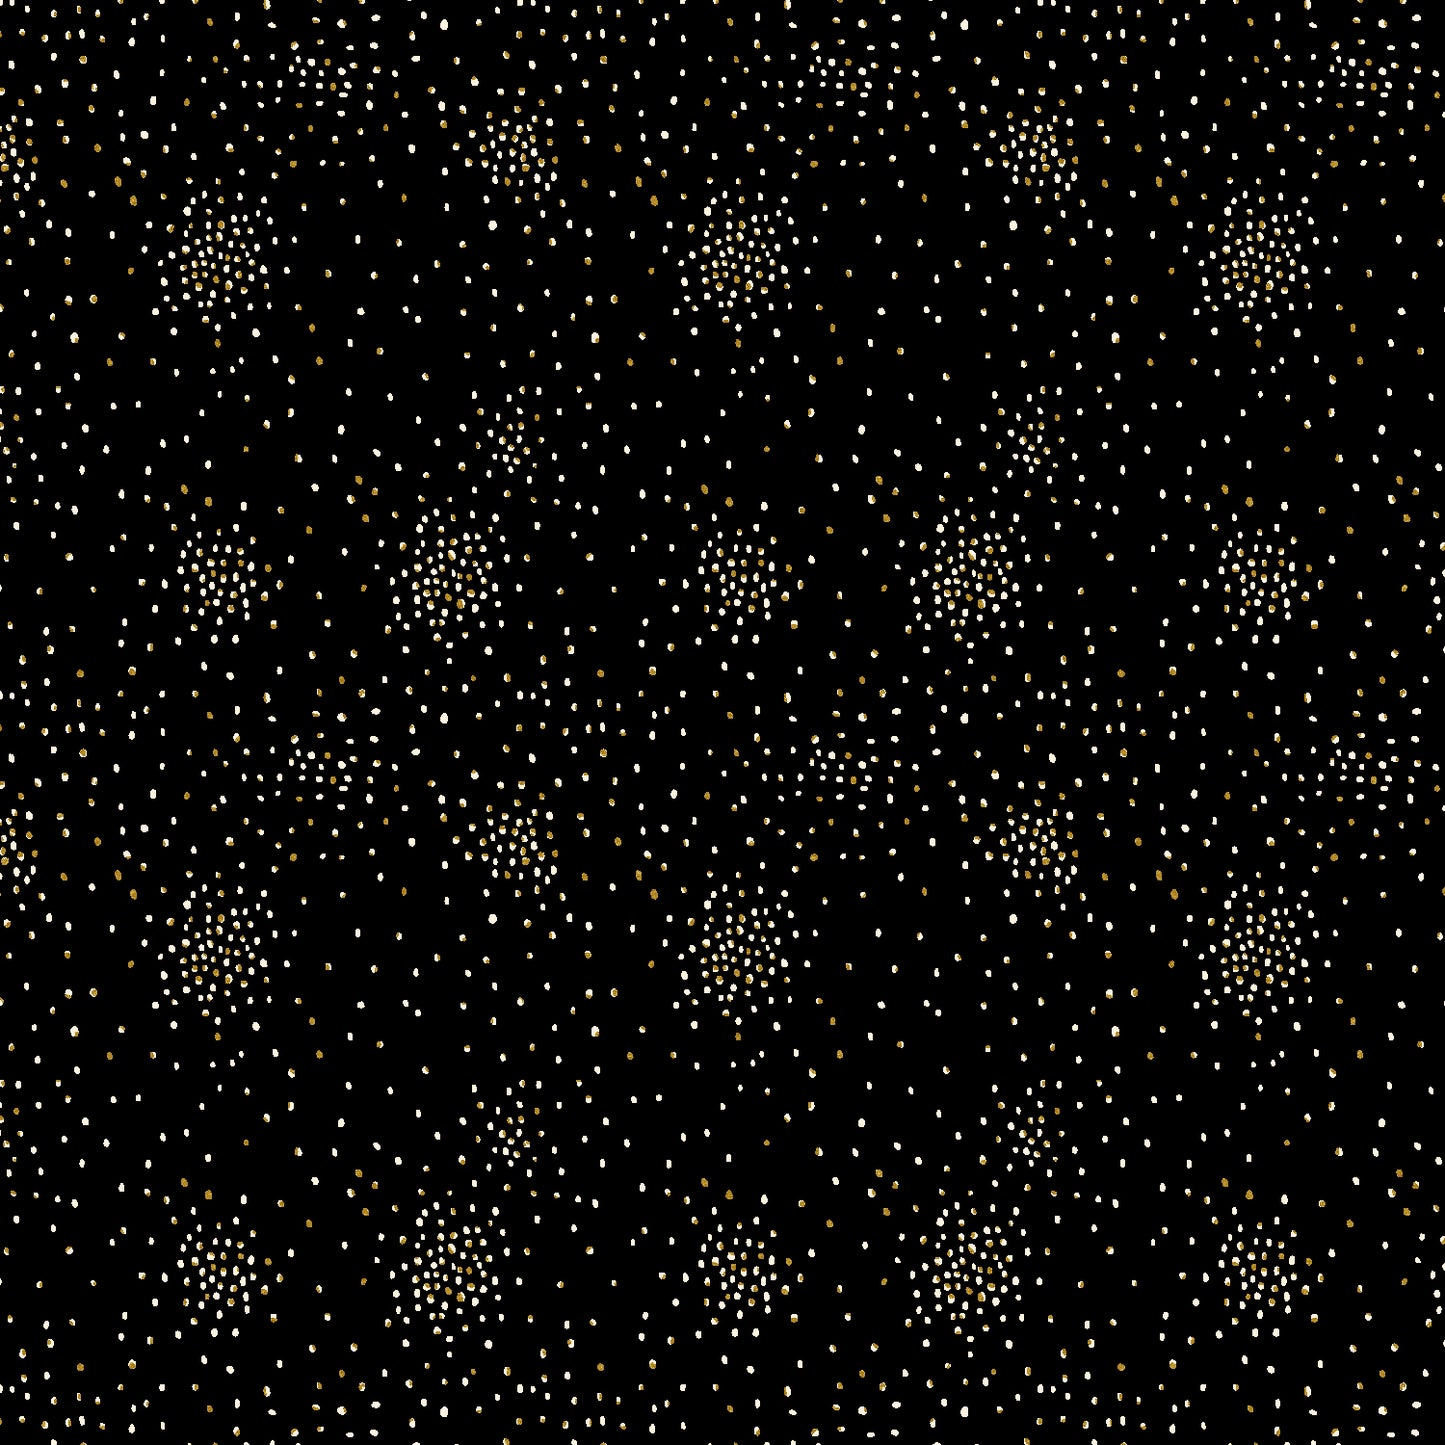 Clusters | Black Hole Metallic